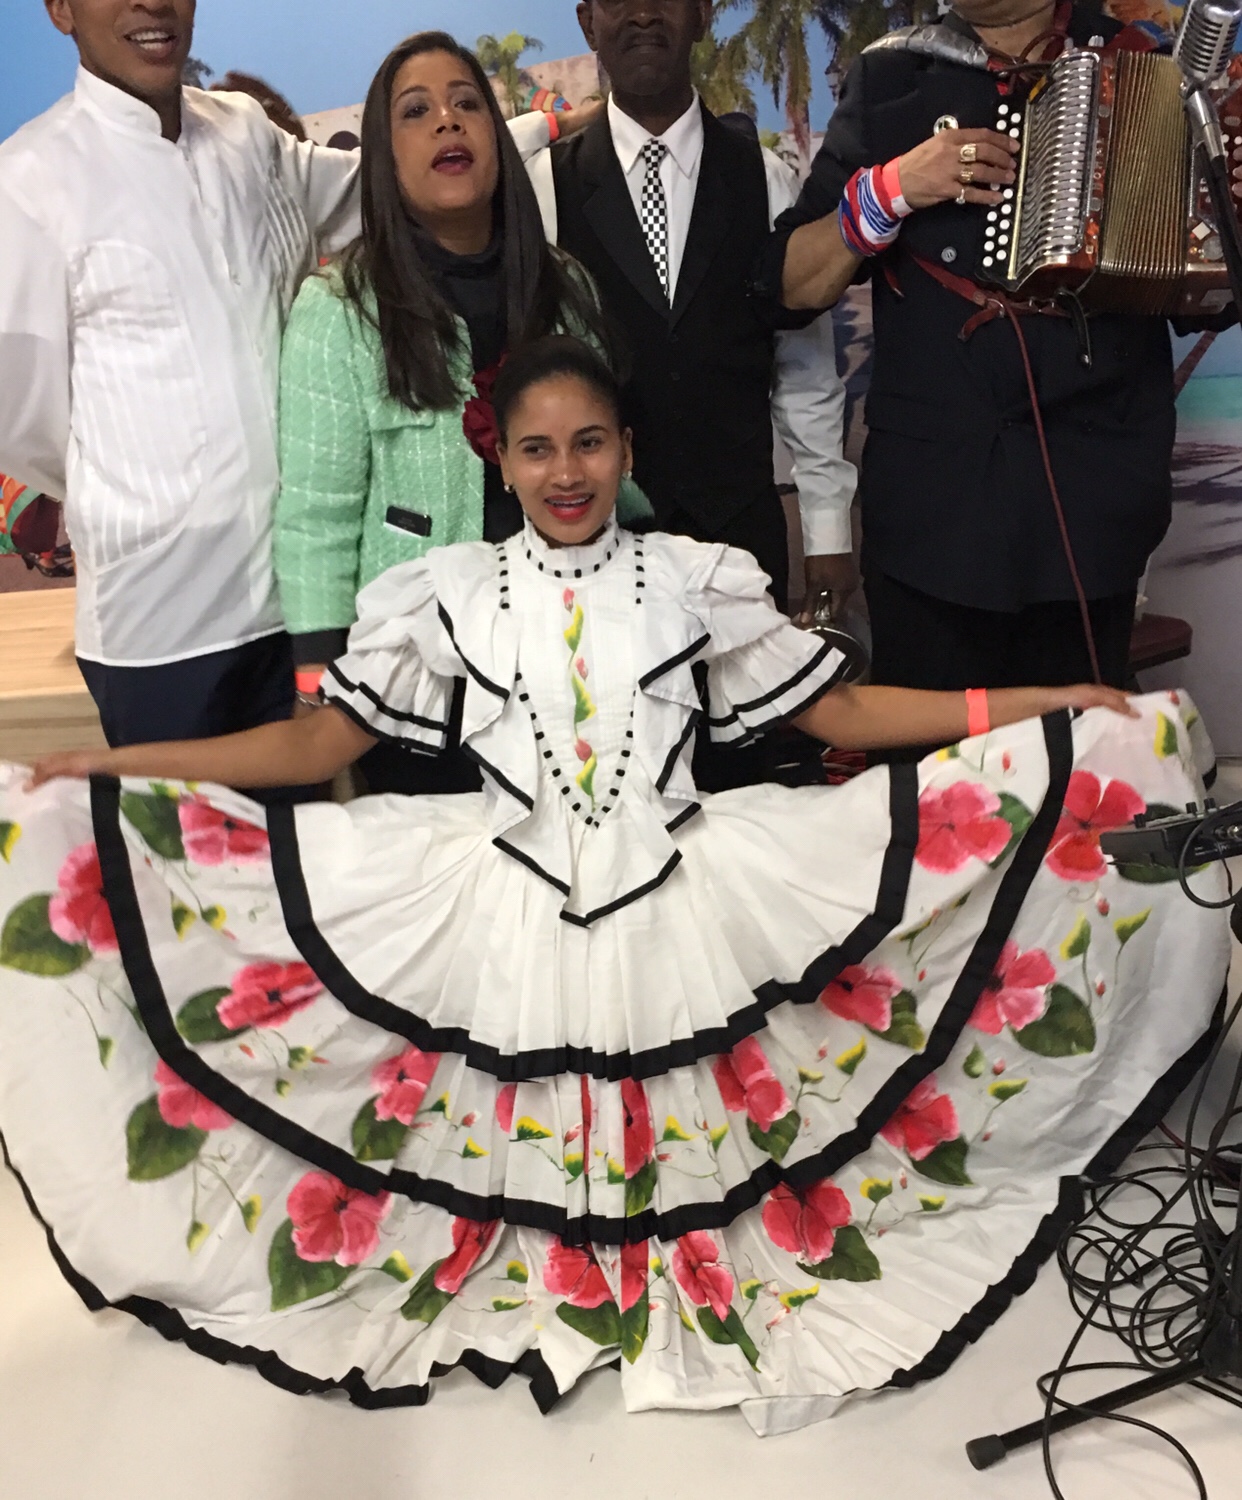 Un groupe de personnes posant en robes mexicaines lors d’une fête.